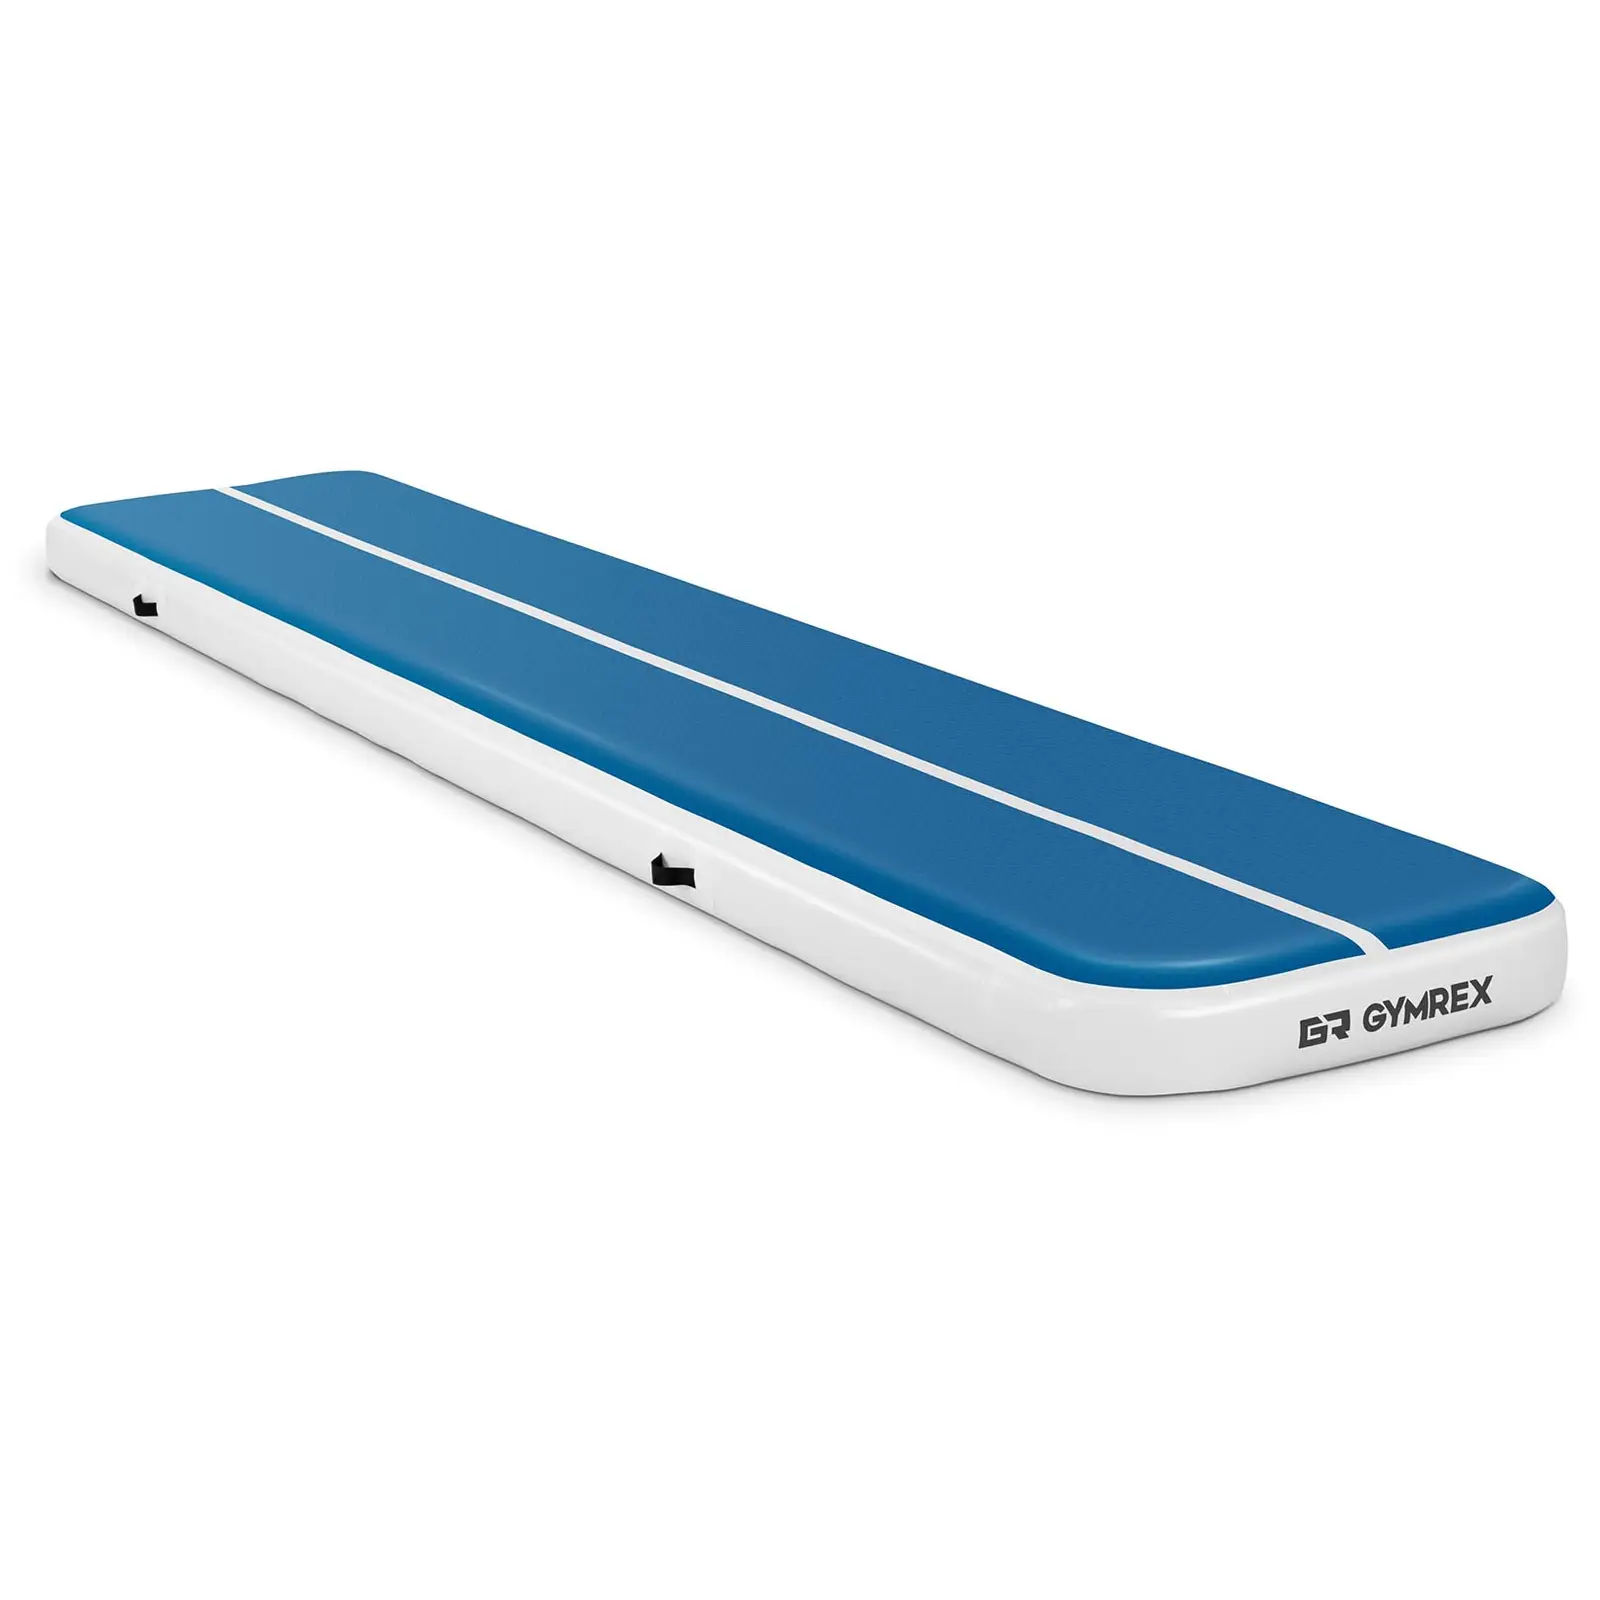 Colchoneta de gimnasia - 500 x 100 x 20 cm - 250 kg - azul/blanco